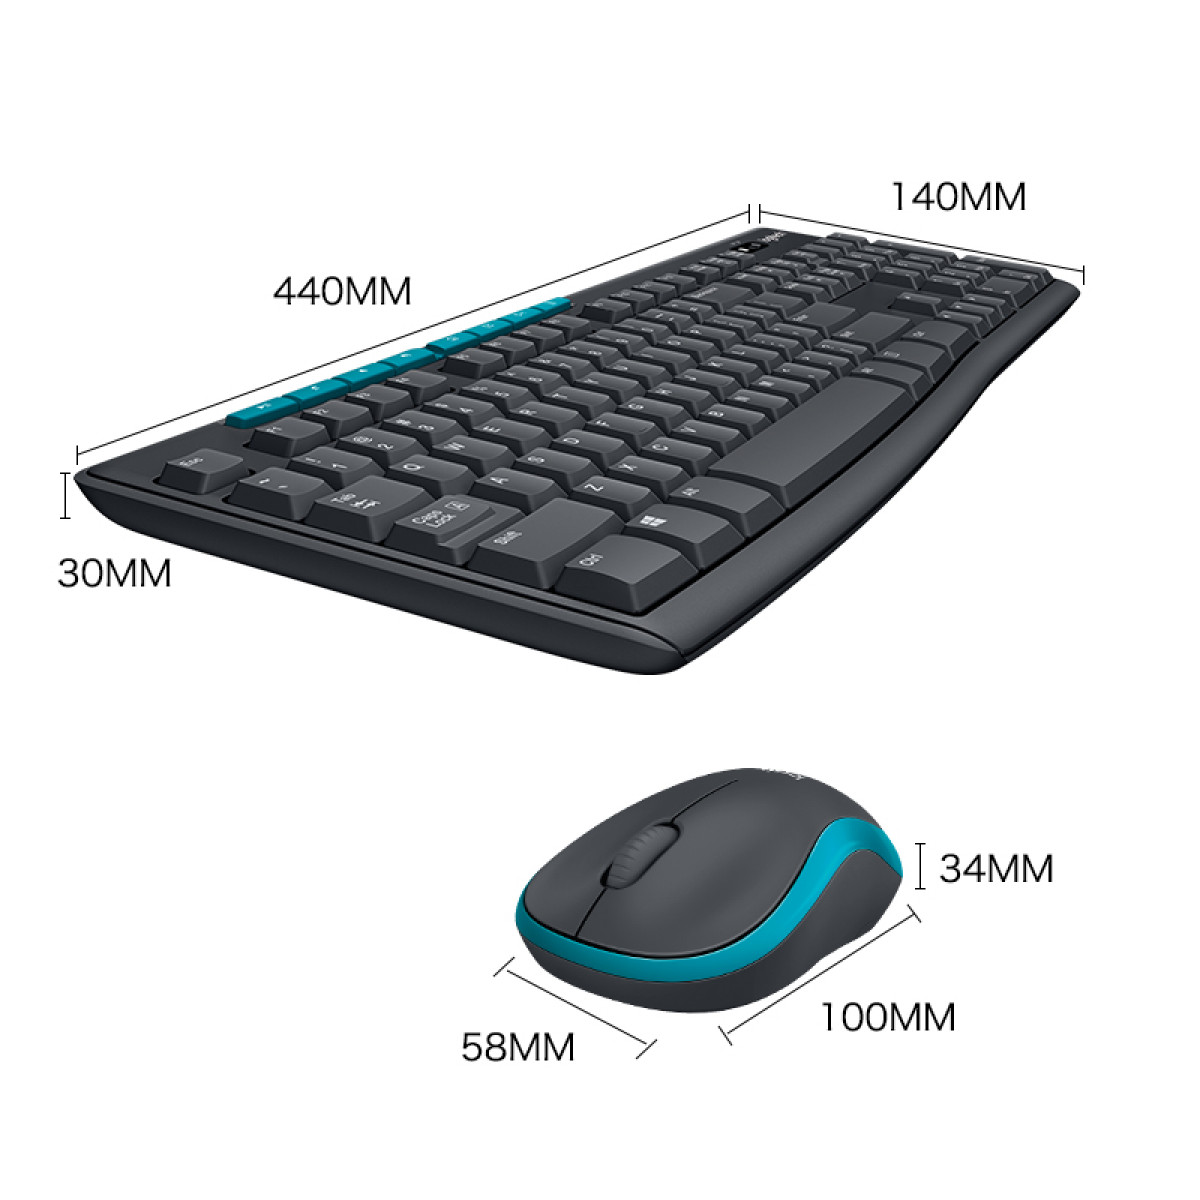 罗技（Logitech）MK275无线键鼠套装 键盘鼠标 全尺寸 黑蓝色 带无线2.4G接收器